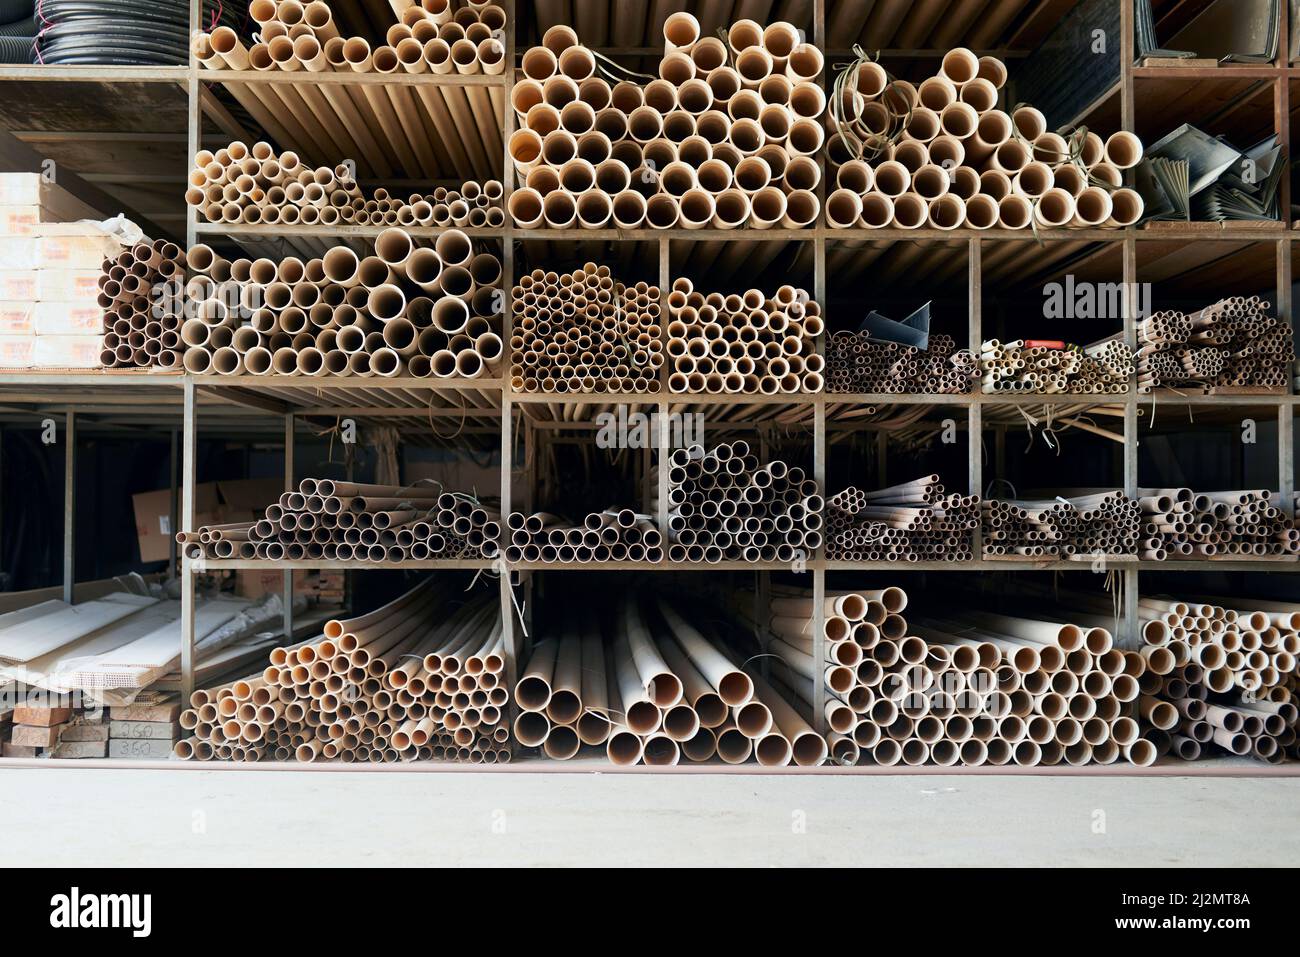 Alle Baumaterialien, die Sie benötigen. Ausgeschnittene Aufnahme von Baustoffen in einem Industrielager. Stockfoto